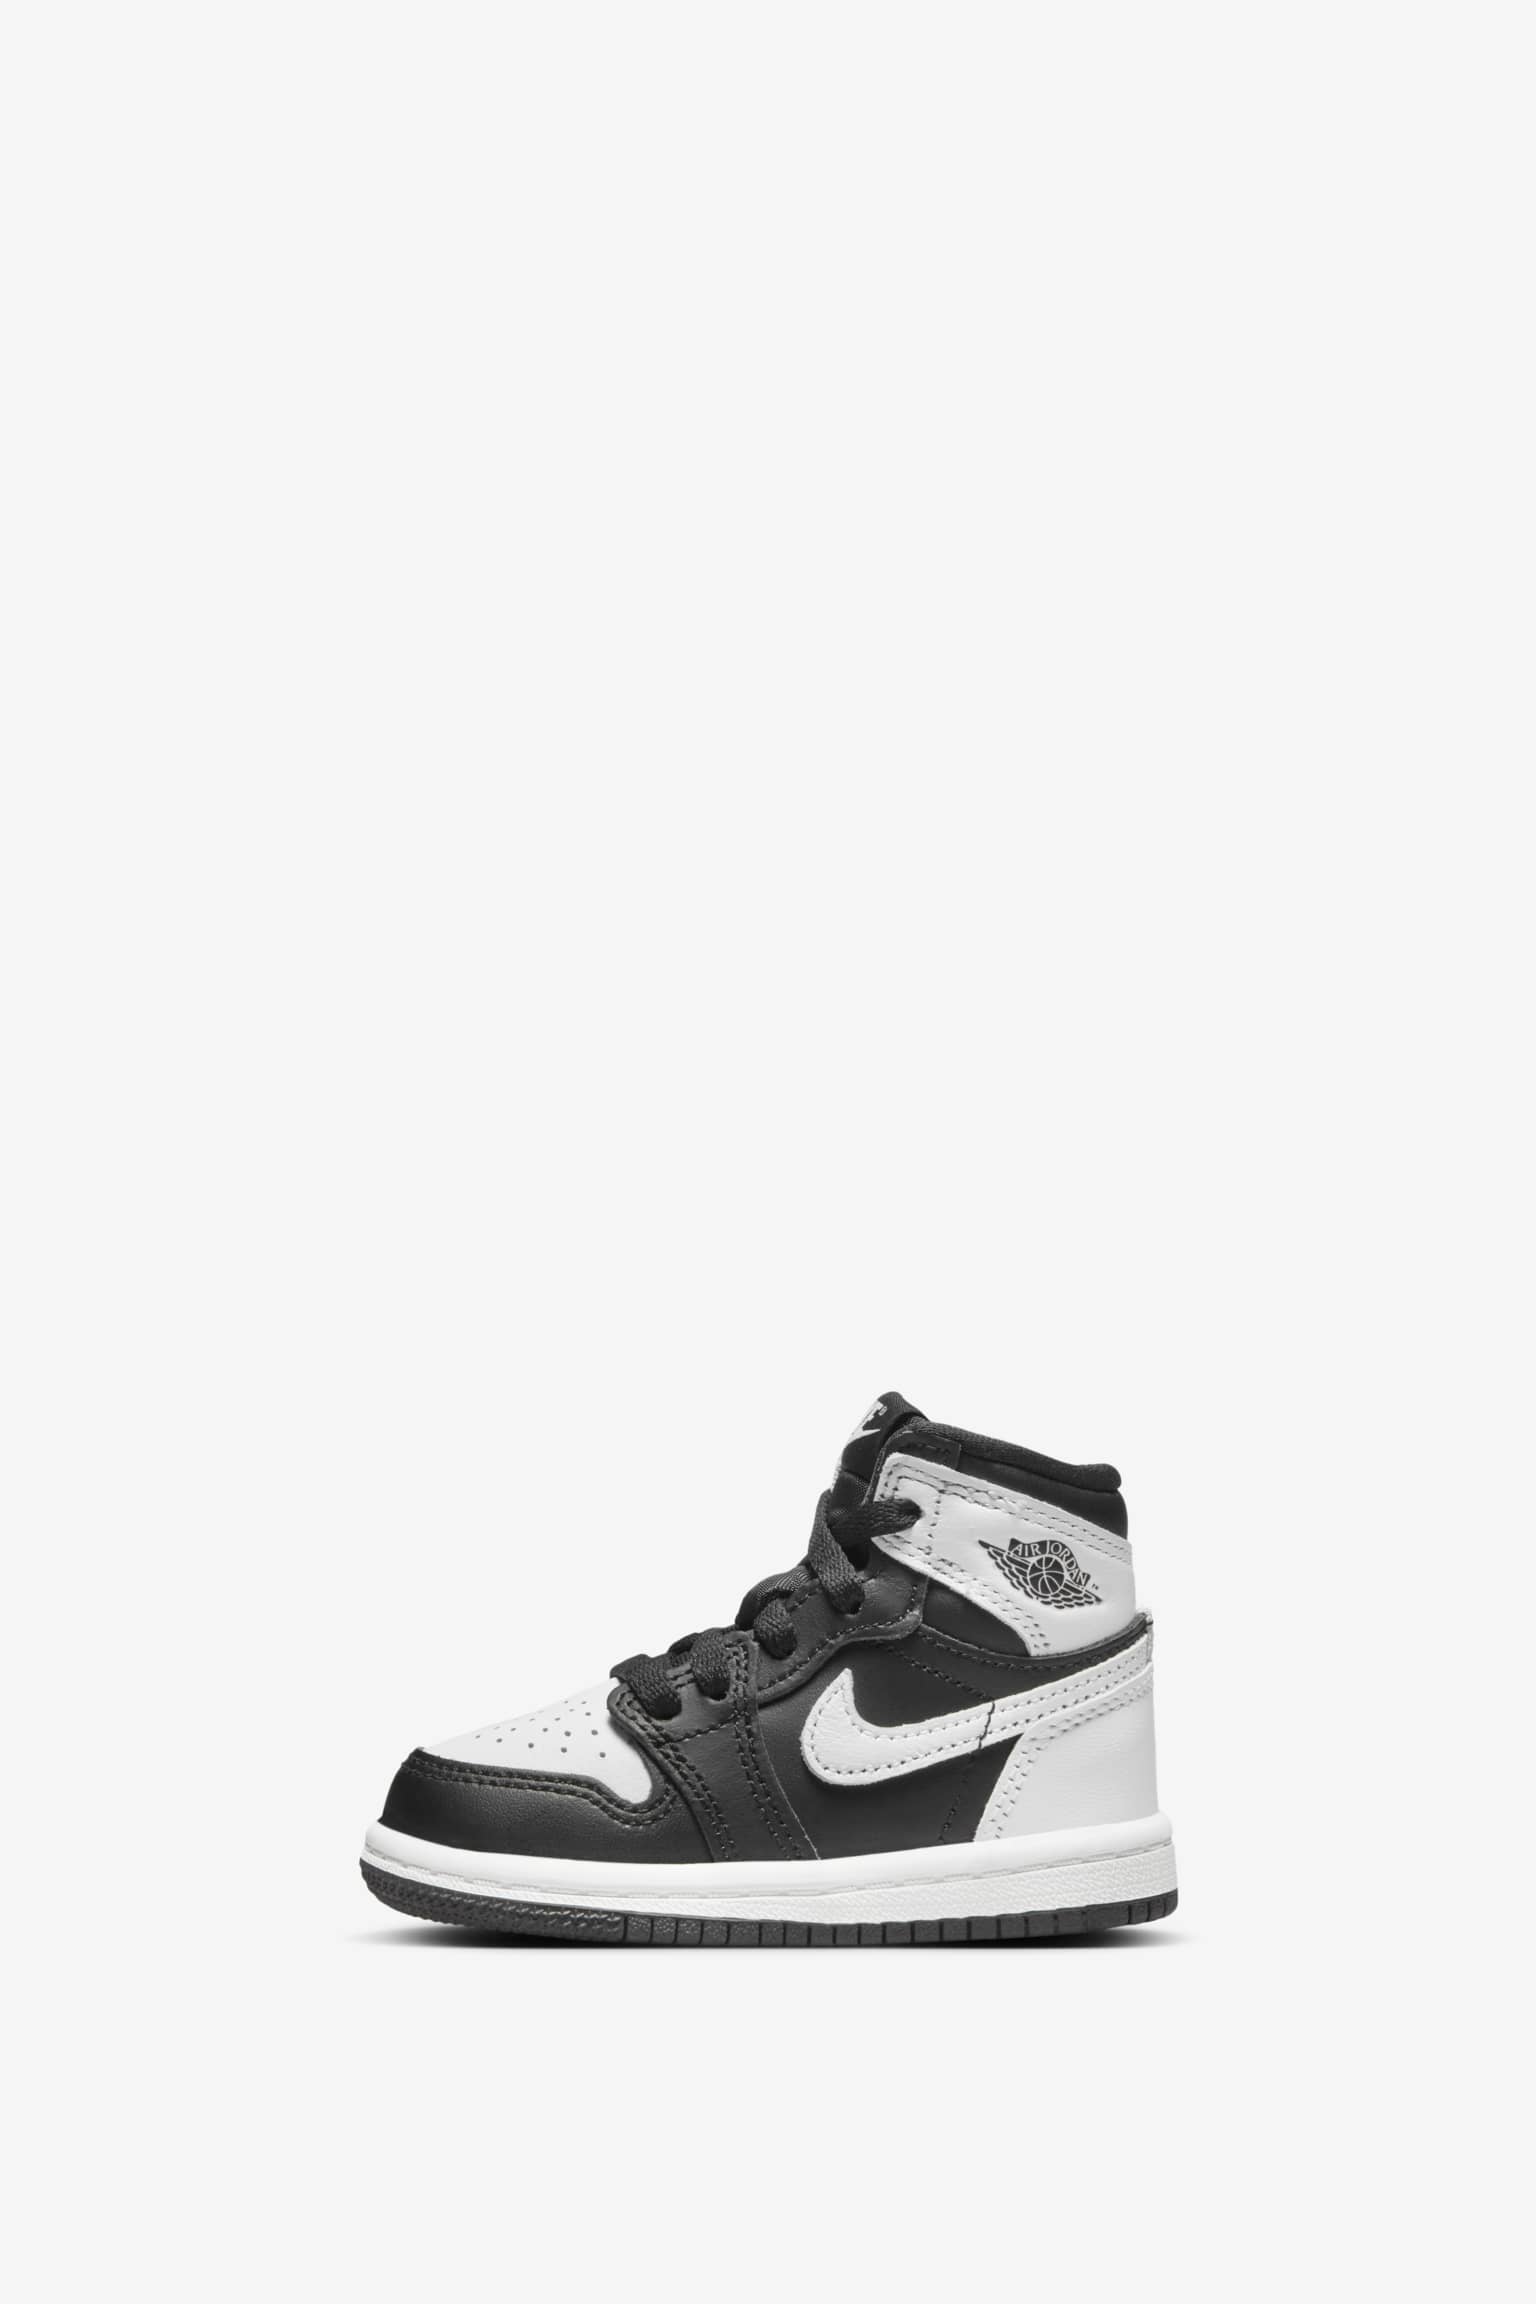 Air Jordan 1 High OG 'Black White' (DZ5485-010) release date. Nike